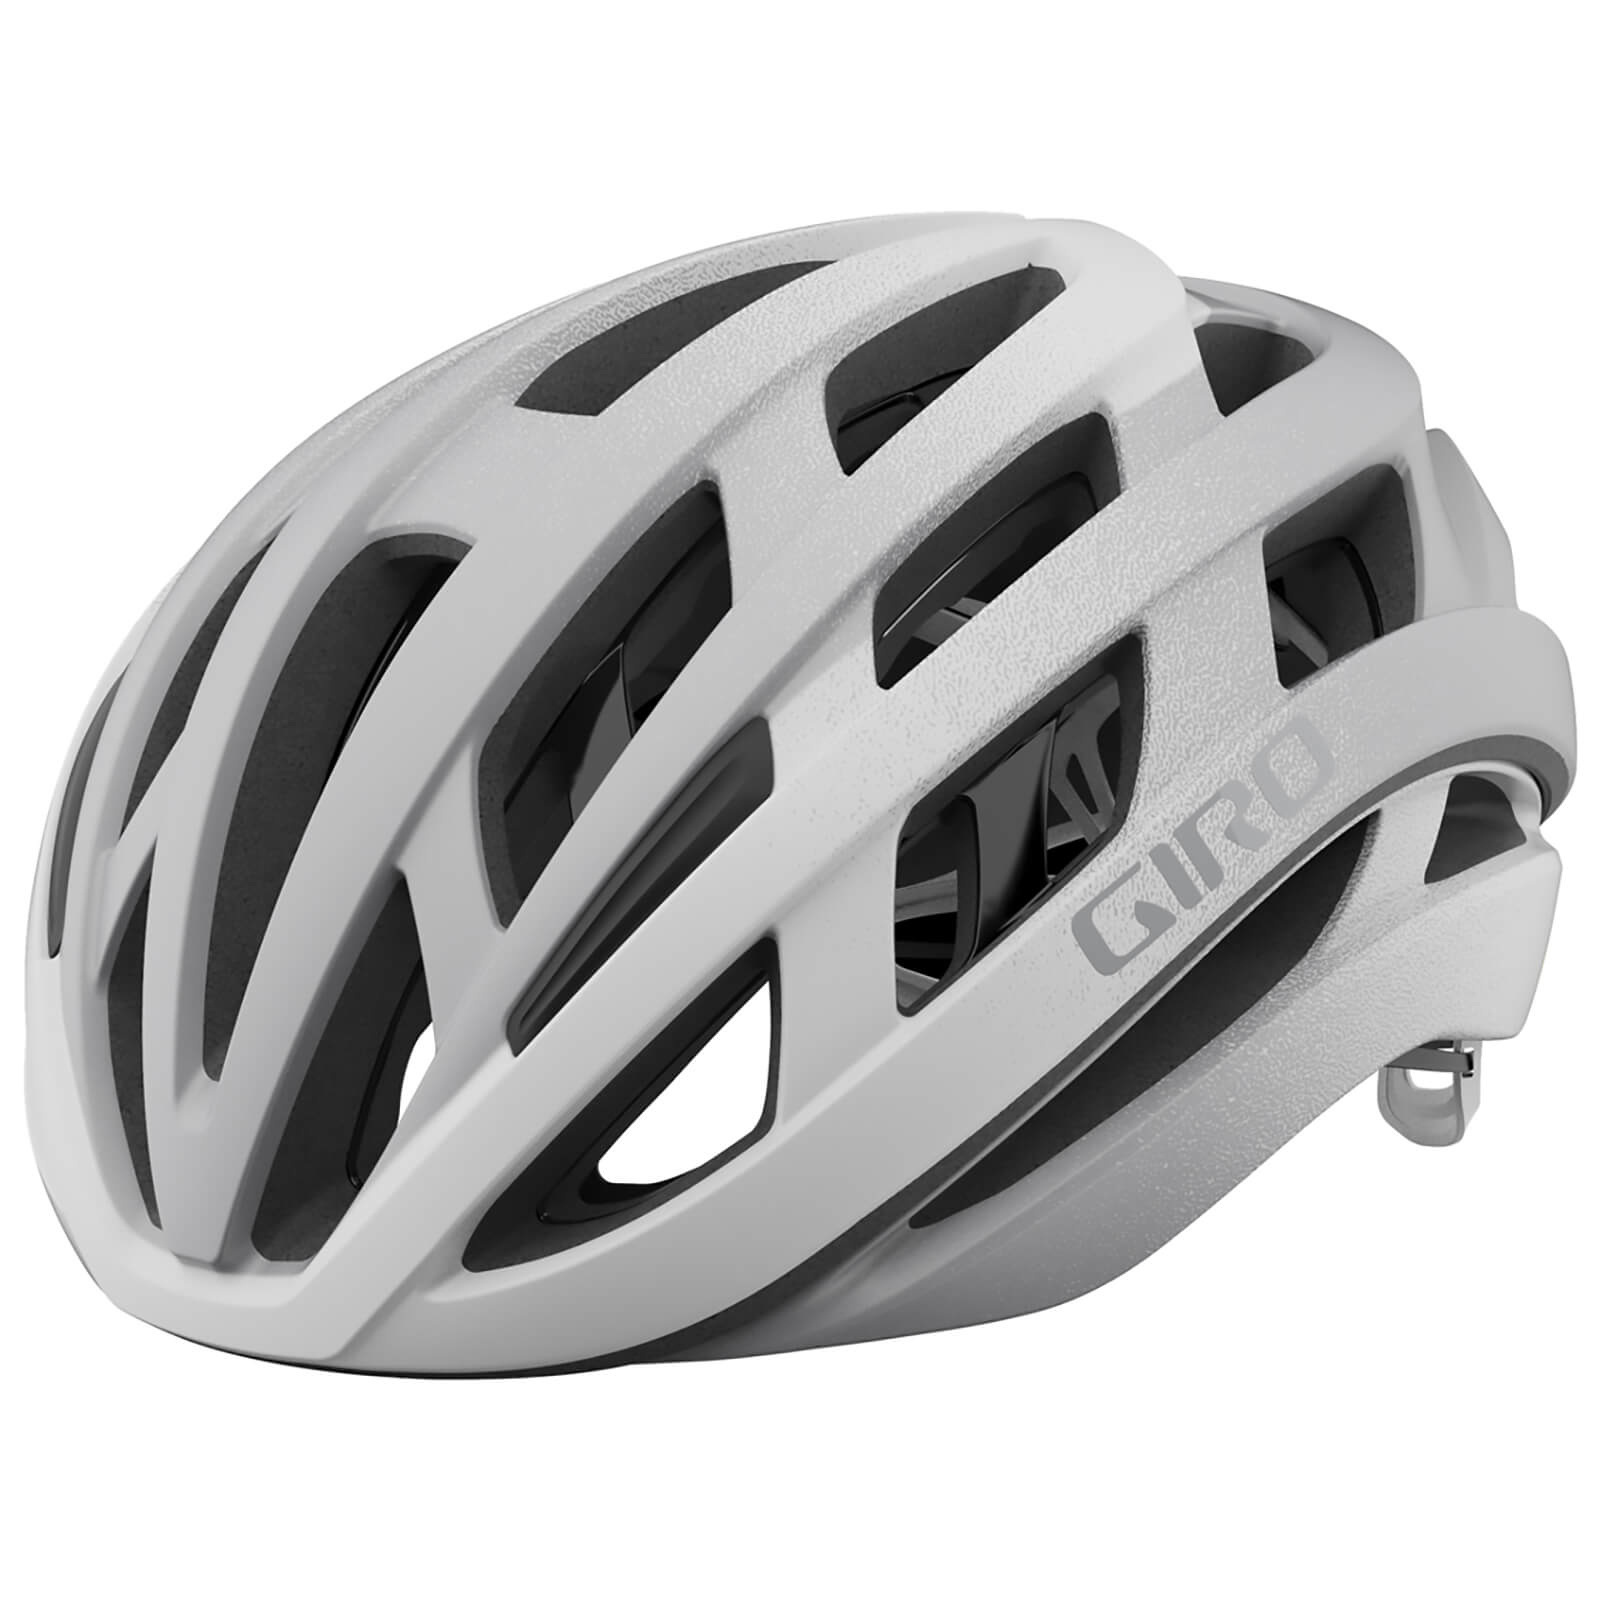 Giro Helios Spherical Road Helmet - S/51-55cm - Matte White/Silver